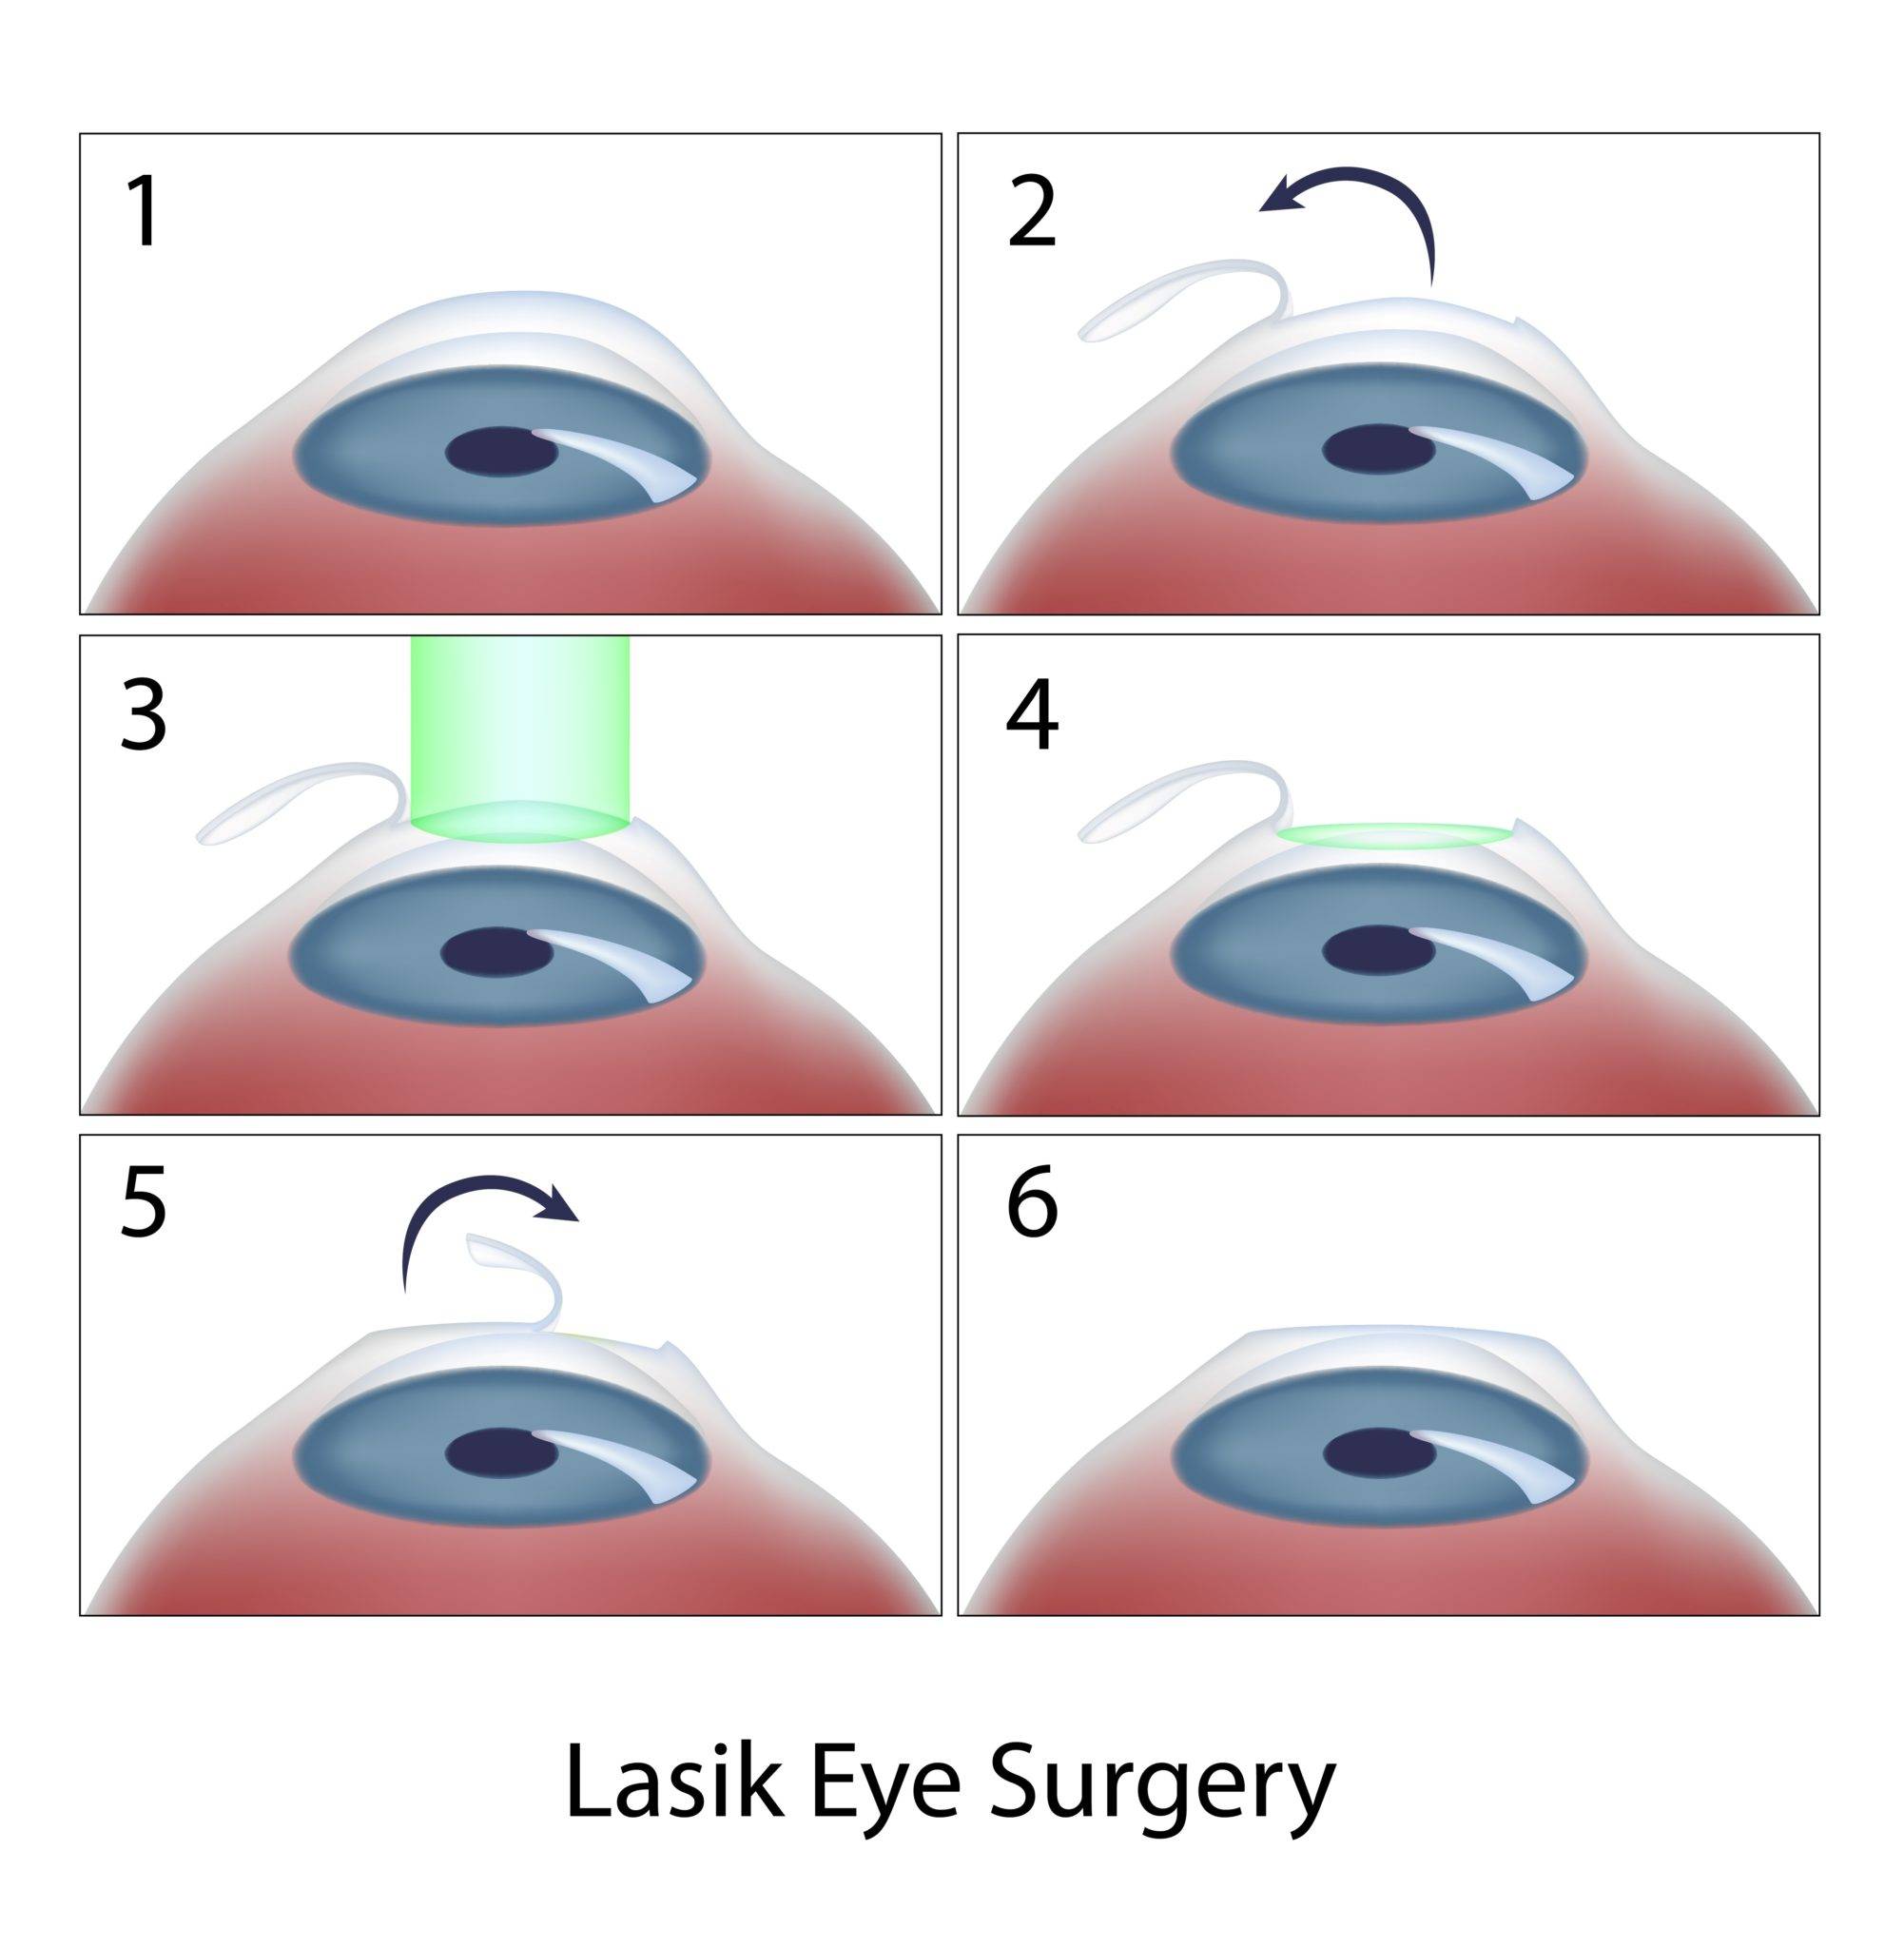 Консультация офтальмолога: может ли ухудшиться зрение после лазерной коррекции?